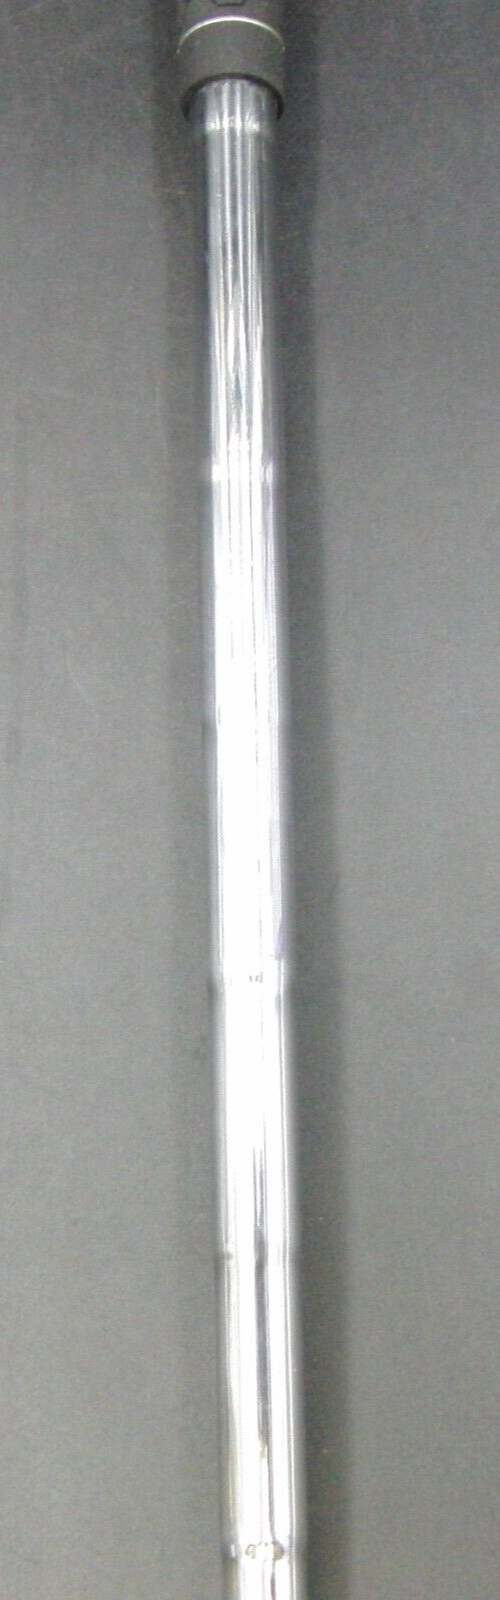 Callaway Golf X22 4 Iron Regular Steel Shaft Callaway Golf Grip